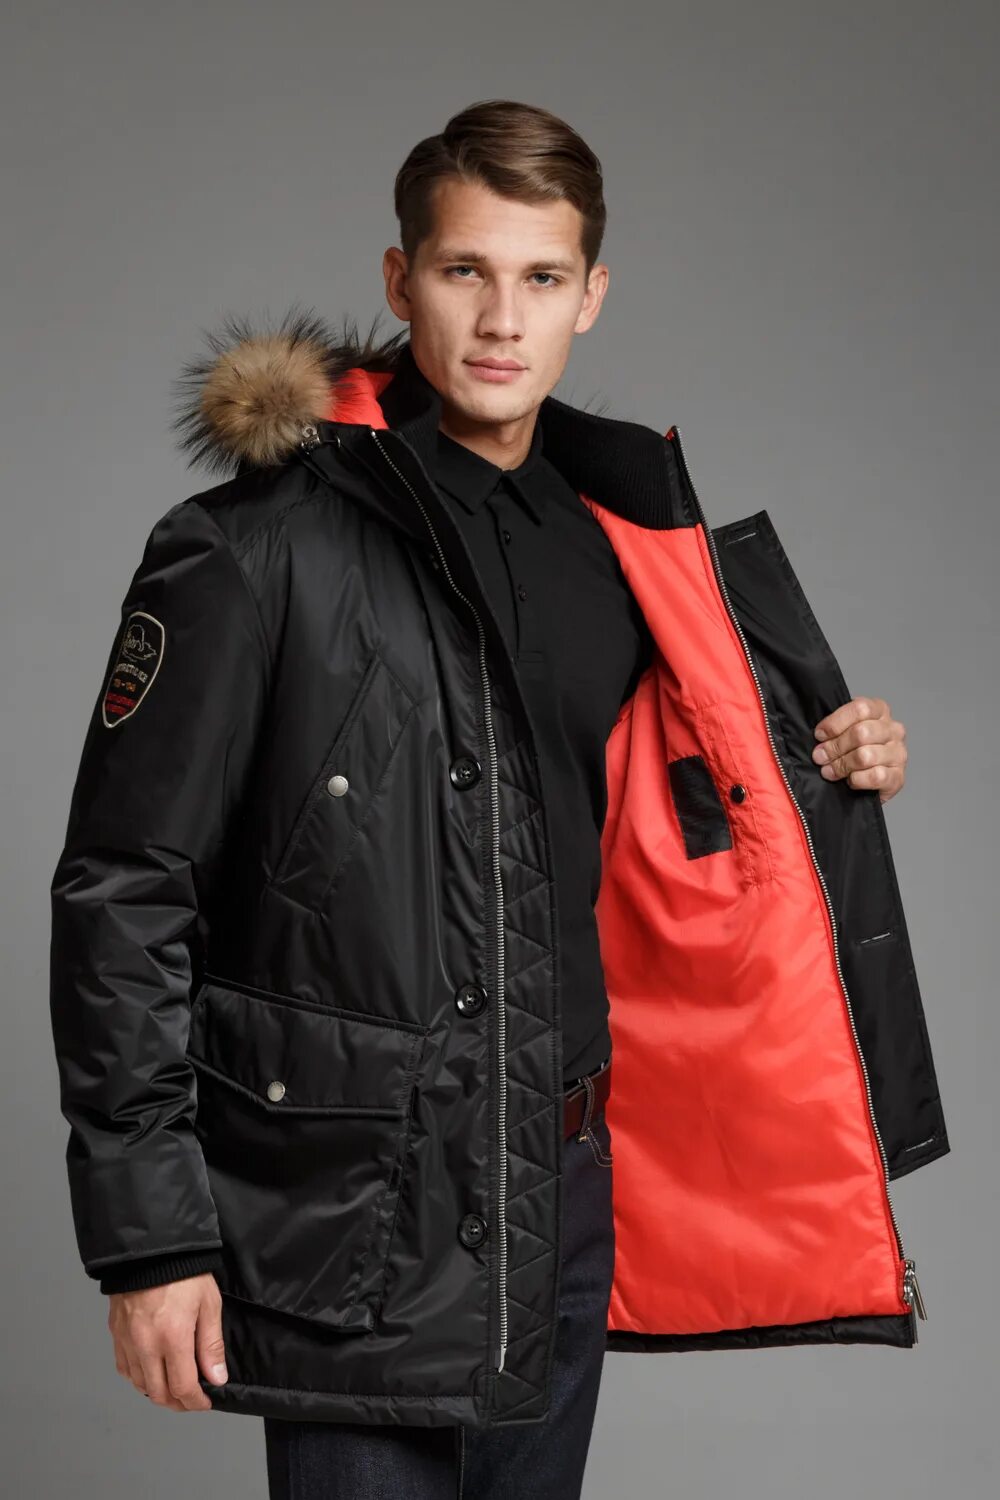 Igor Plaxa куртки женские. Куртка мужская Аляска тинсулейт. Куртка Аляска кур 563. Куртка мужская Аляска фирмы dizel.